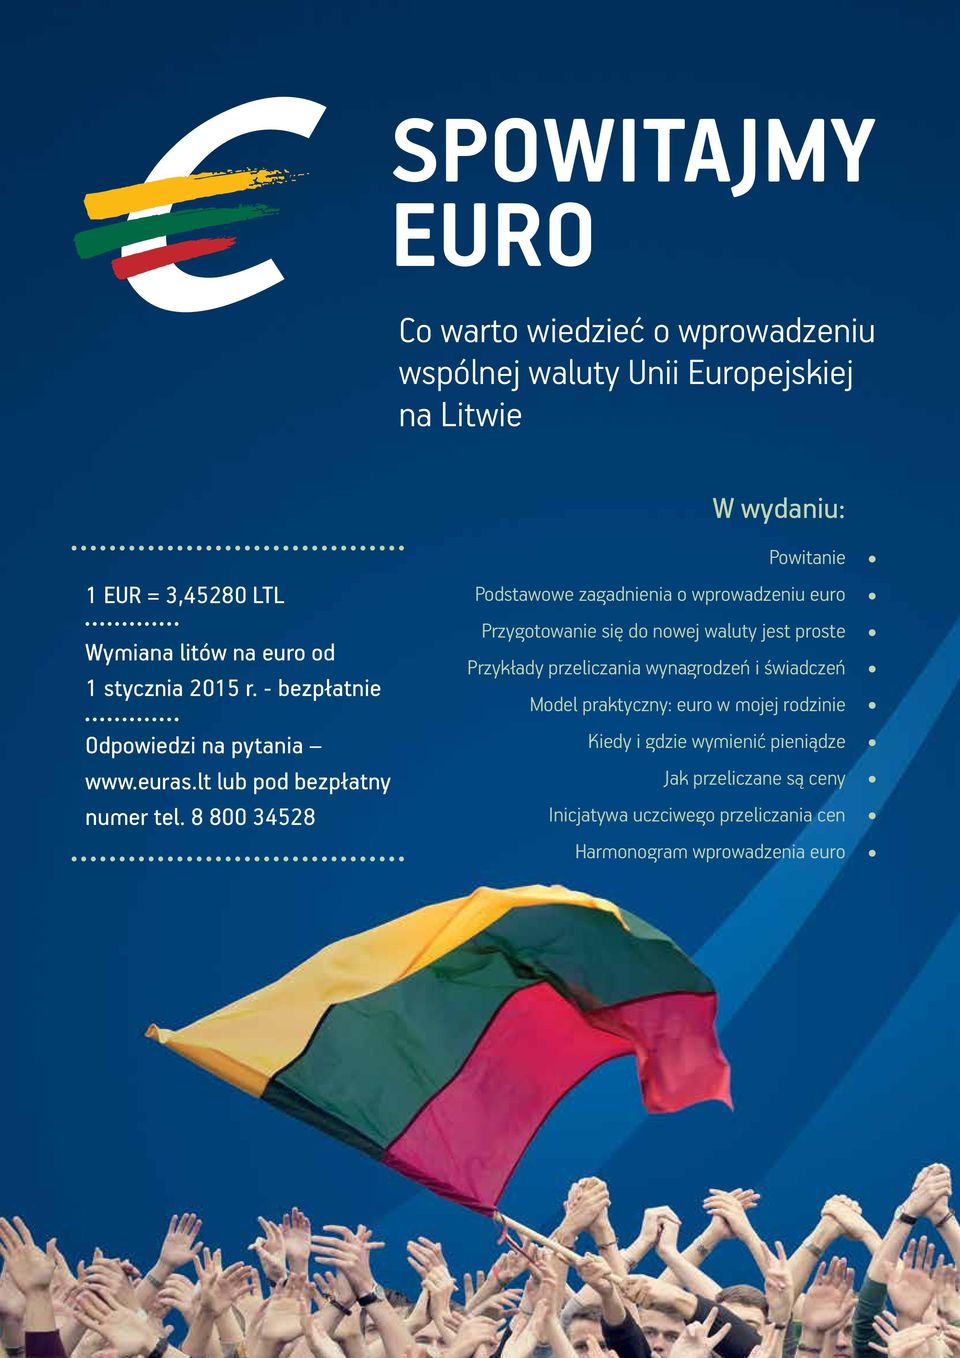 8 800 34528 Powitanie Podstawowe zagadnienia o wprowadzeniu euro Przygotowanie się do nowej waluty jest proste Przykłady przeliczania